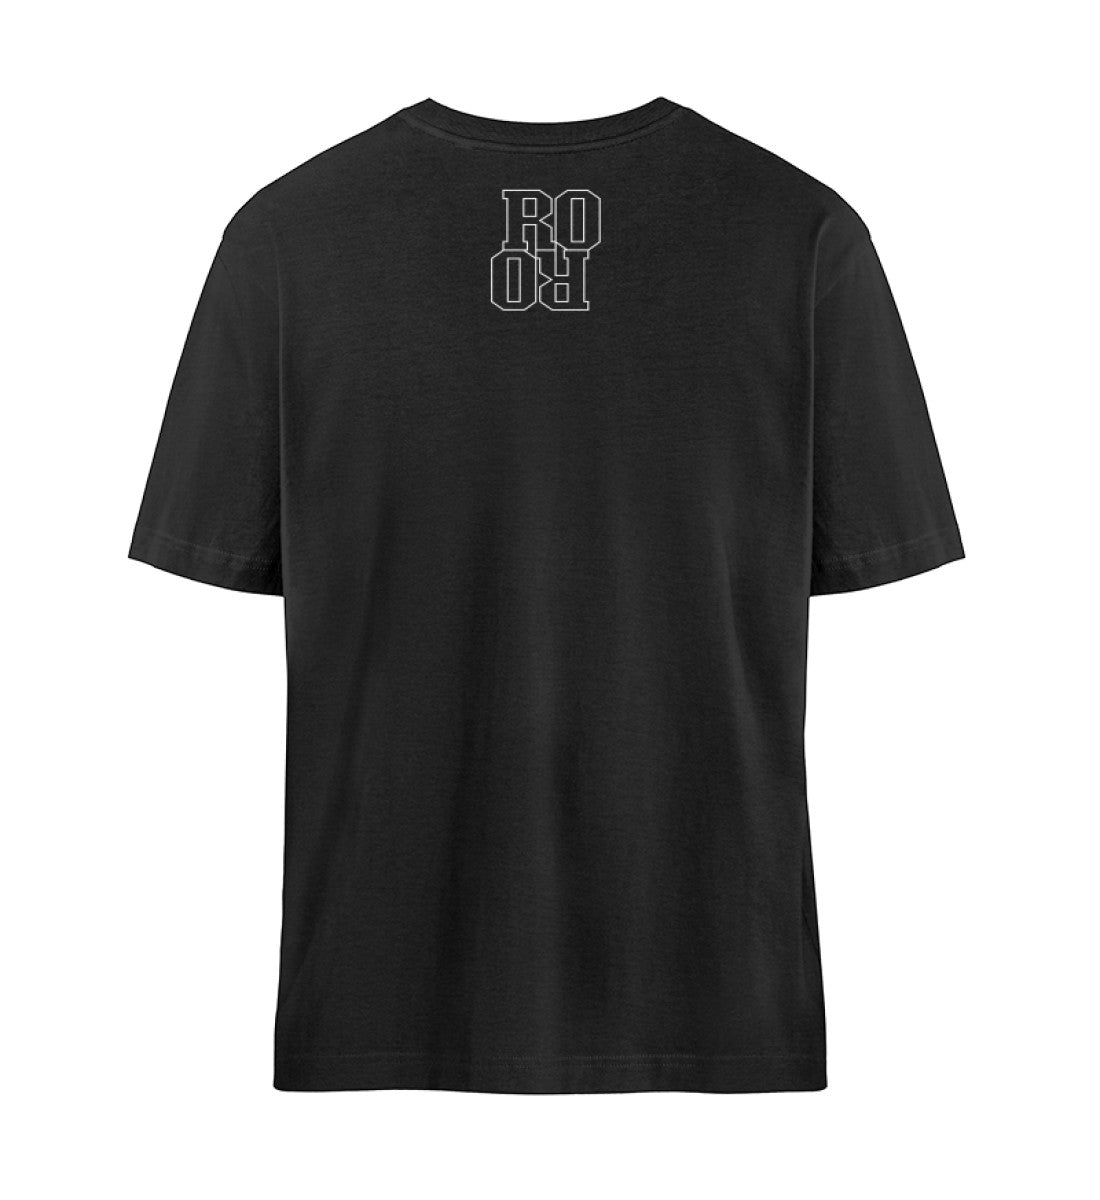 Schwarzes T-Shirt Unisex Relaxed Fit für Frauen und Männer bedruckt mit dem Design der Roger Rockawoo Kollektion hip hop is rocknroll